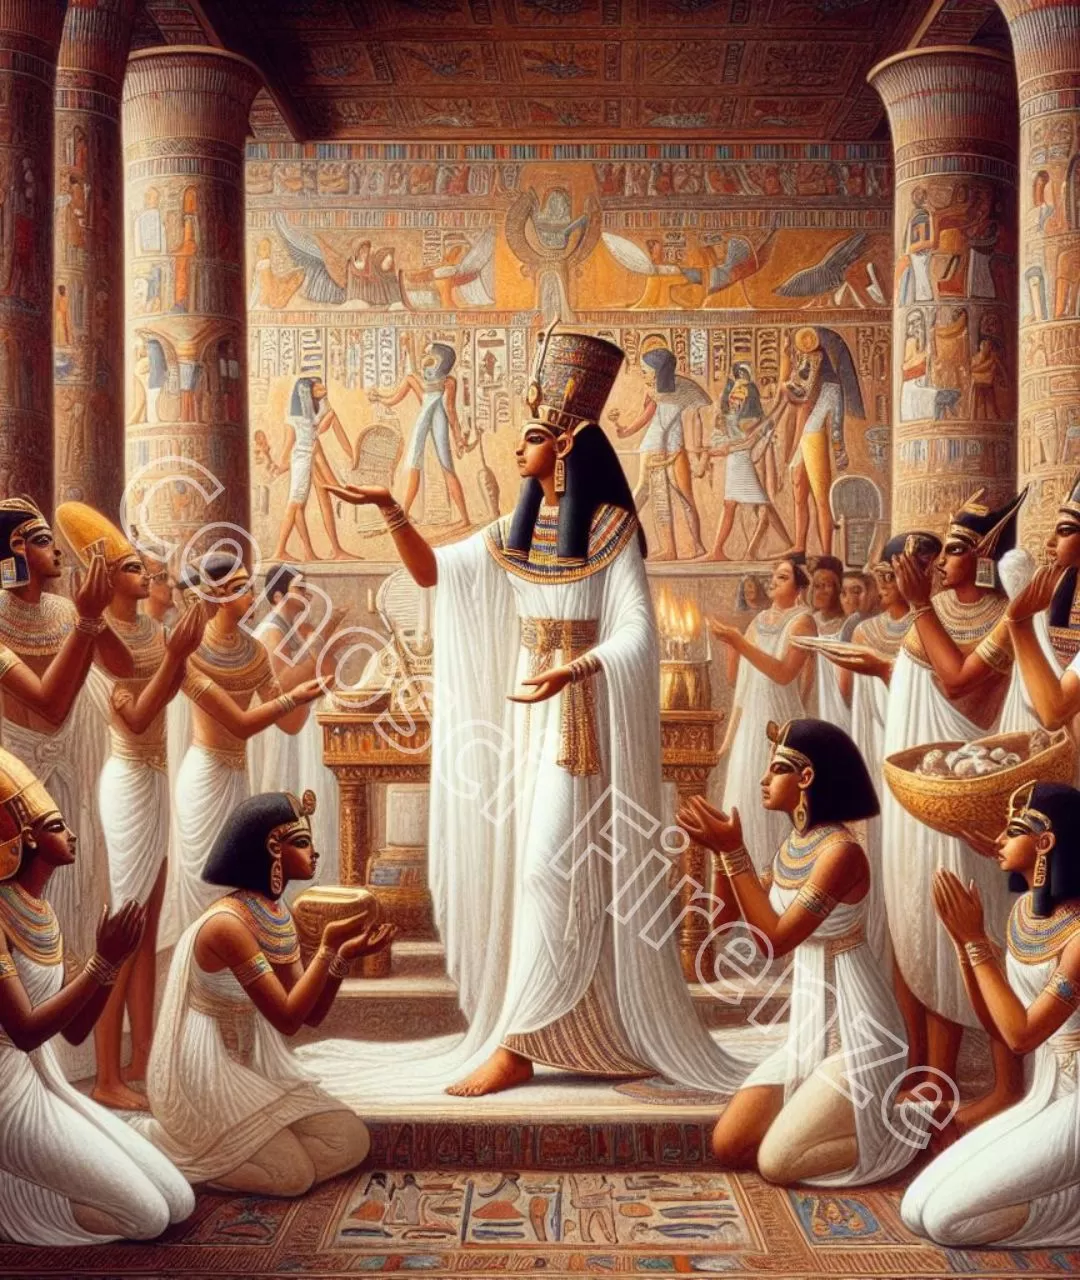 Raffigurazione dell'uso del lino nella corte di Nefertari, con la regina che indossa un elaborato abito di lino bianco mentre offre doni agli dei.